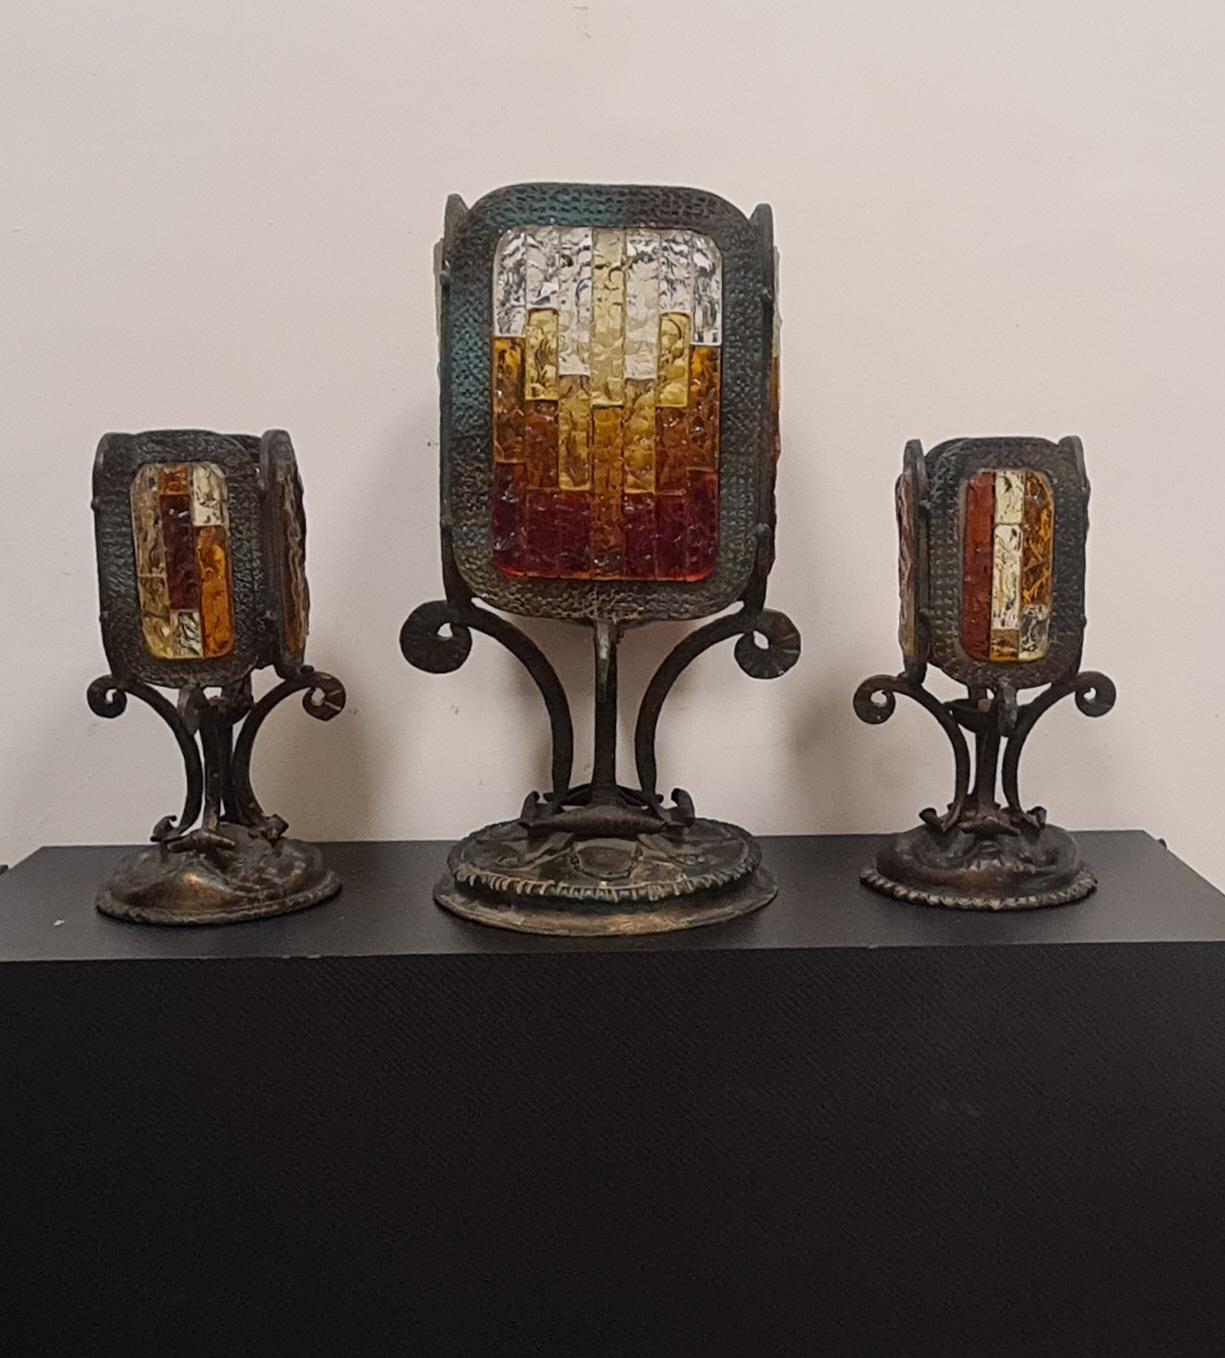 Ensemble de 3 lampes de table de style brutaliste attribuables à Poliarte.

3 lampes spéciales, une grande lampe centrale et deux petites lampes latérales.

Fabriqué dans les années 1970 en fer forgé à la main et en mosaïques de verre de Murano dans